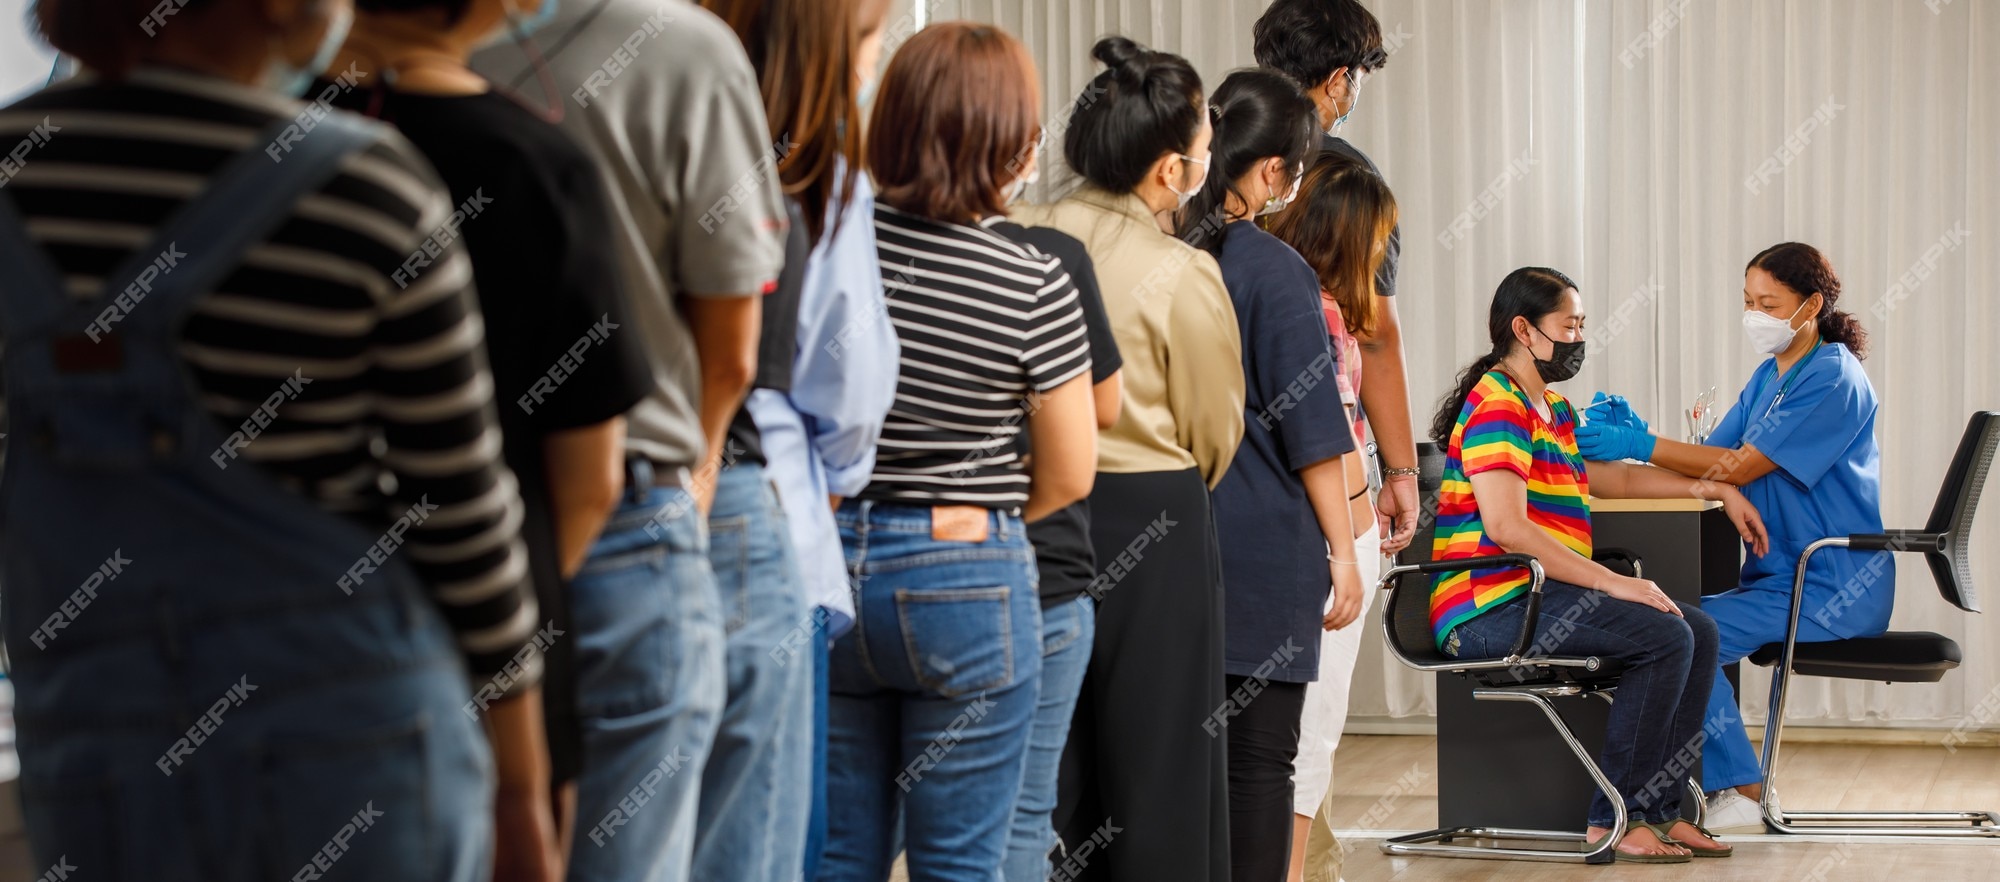 شهروندان در سنین مختلف پشت سر هم ایستاده و منتظر تزریق واکسن هستند در حالی که پزشکان در حال تزریق ماسک به زنان هستند. کووید-19 یا مفهوم واکسیناسیون کرونا - دانلود رایگان -عکس و وکتور 